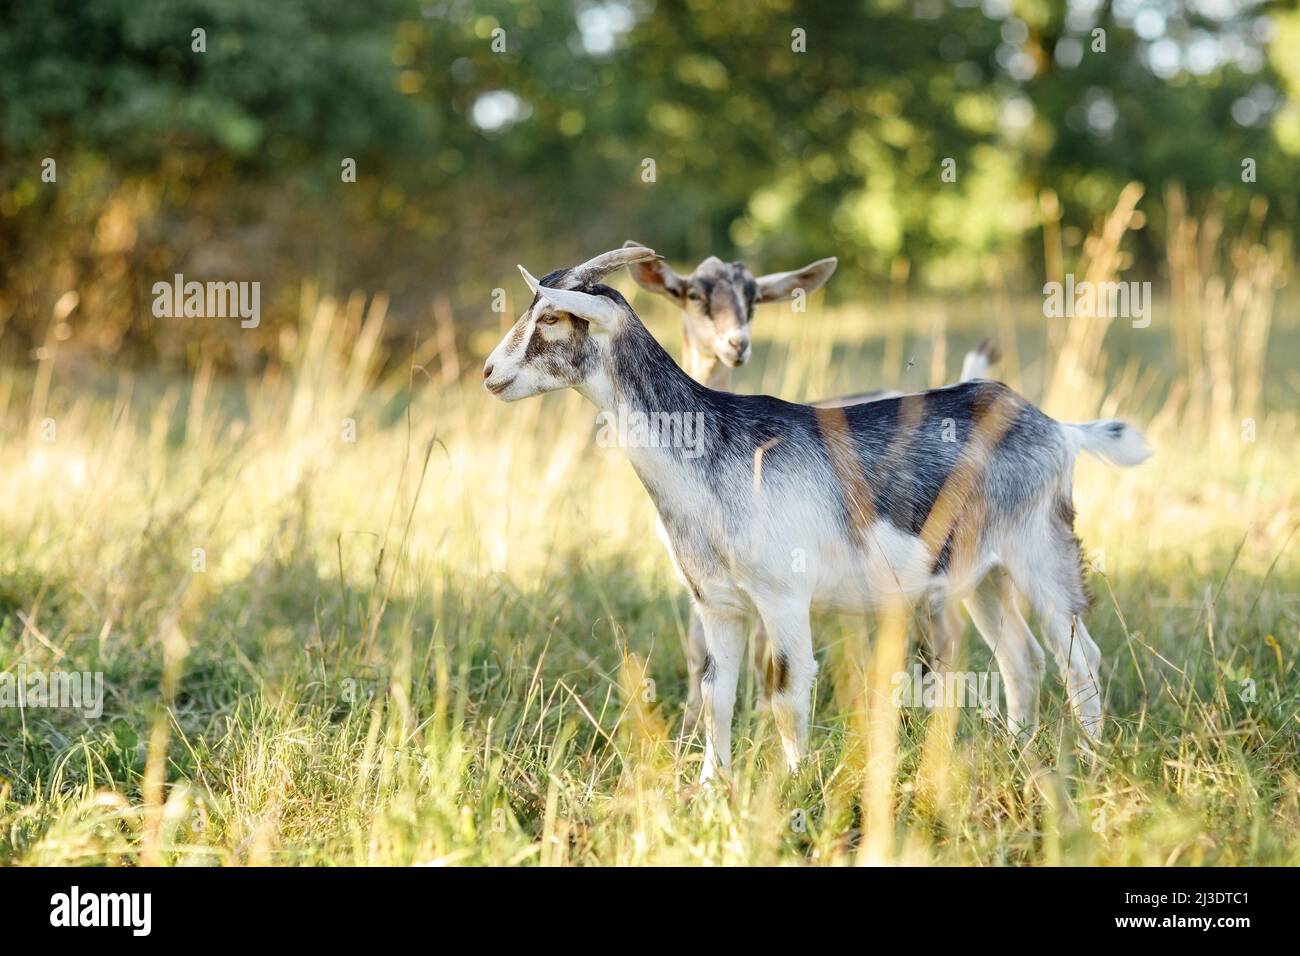 Una joven cabra gris con un vientre blanco se encuentra en un prado dorado  de luz nocturna. Libre rango, felices mascotas, la agricultura lechera  rural orgánica Fotografía de stock - Alamy